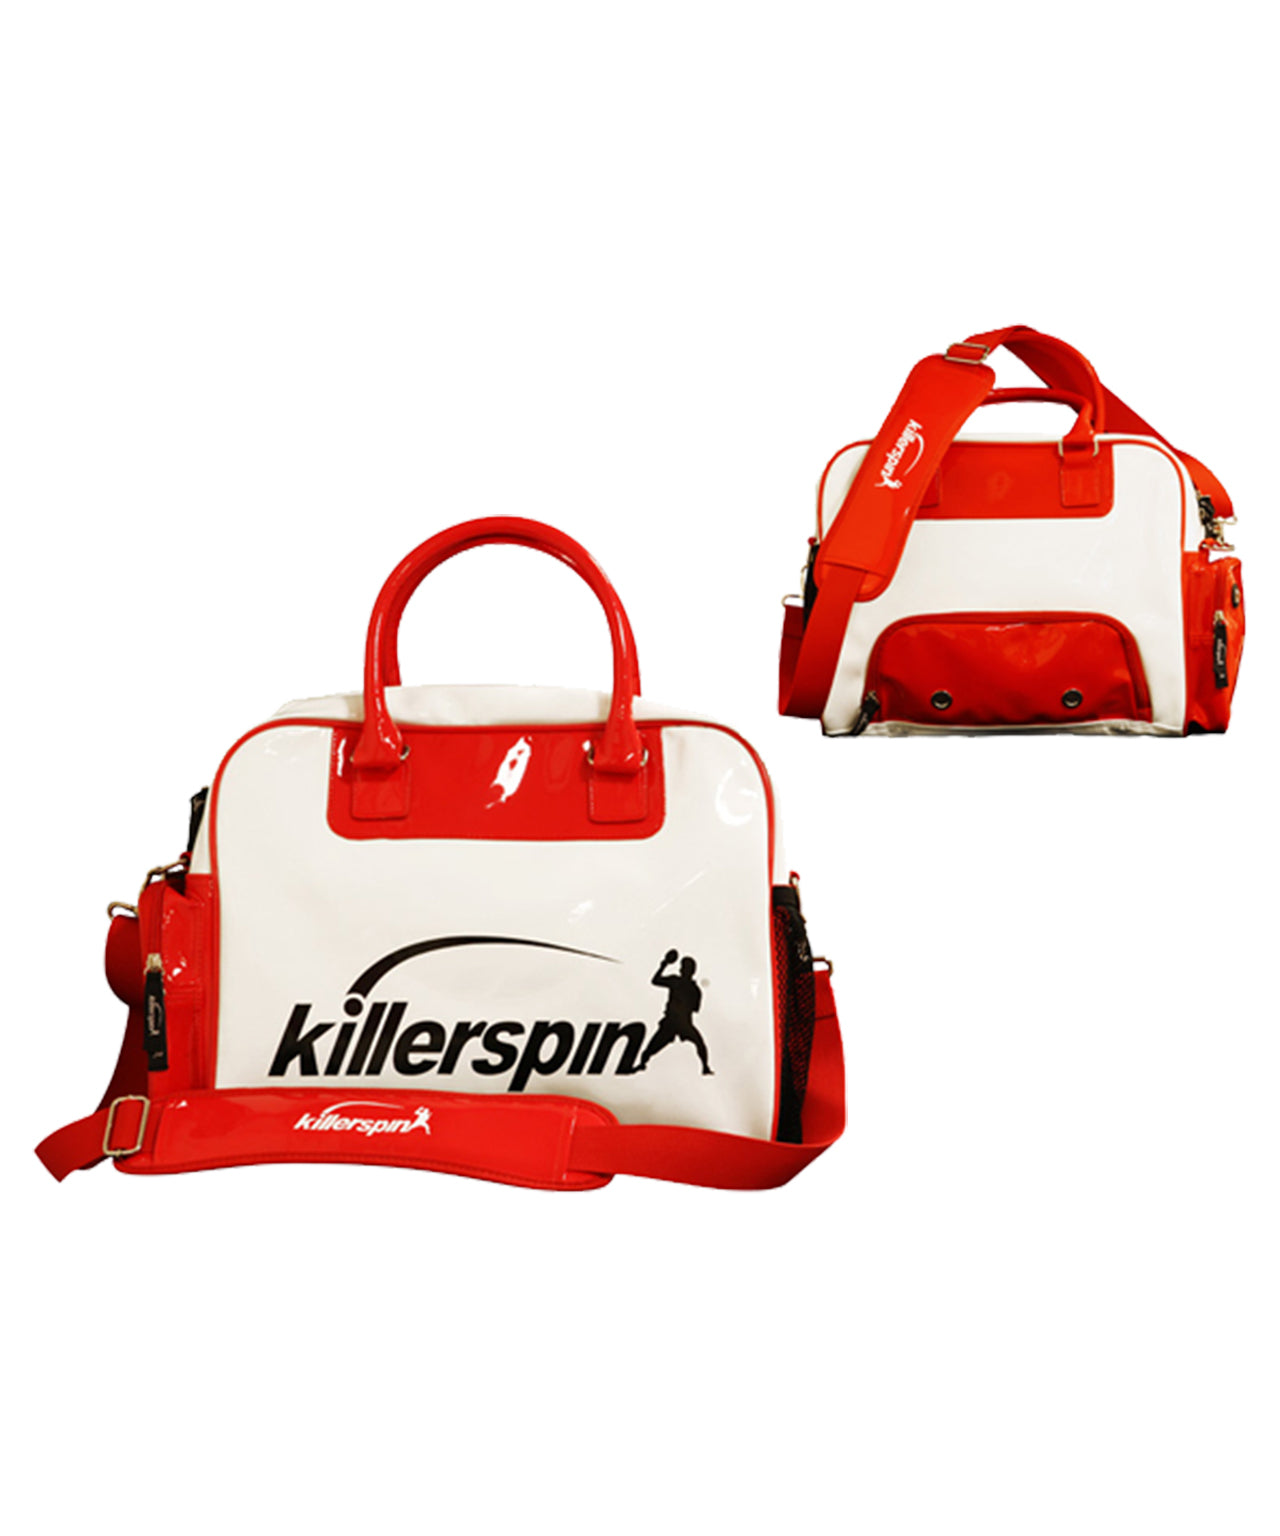 Killerspin Krew Bag Ping Pong Fashion Bag